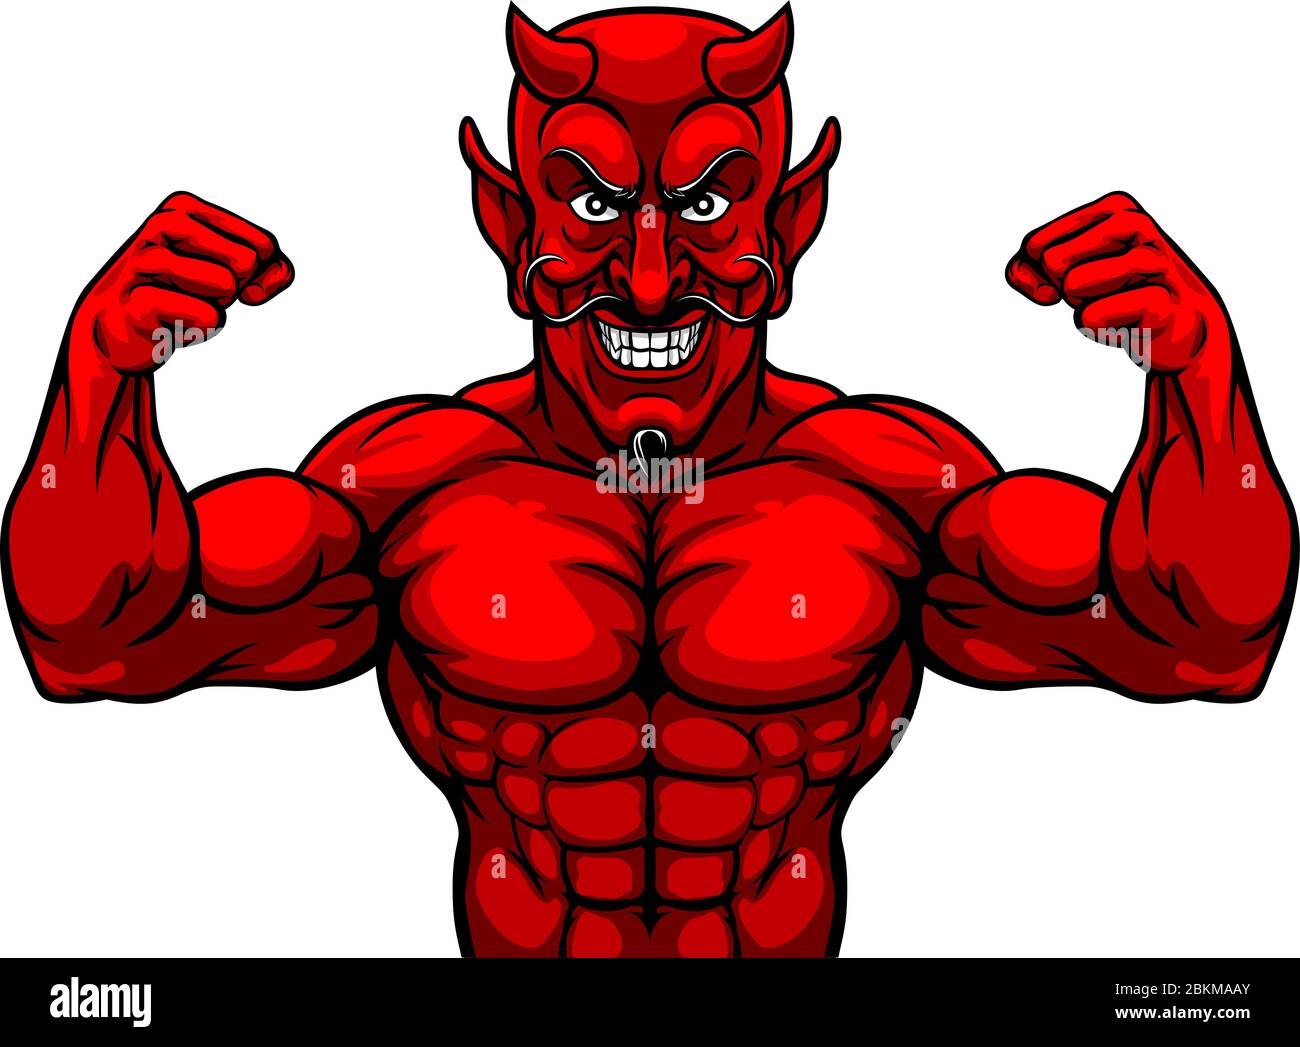 Mascotte Personnage Sports Devil Illustration de Vecteur